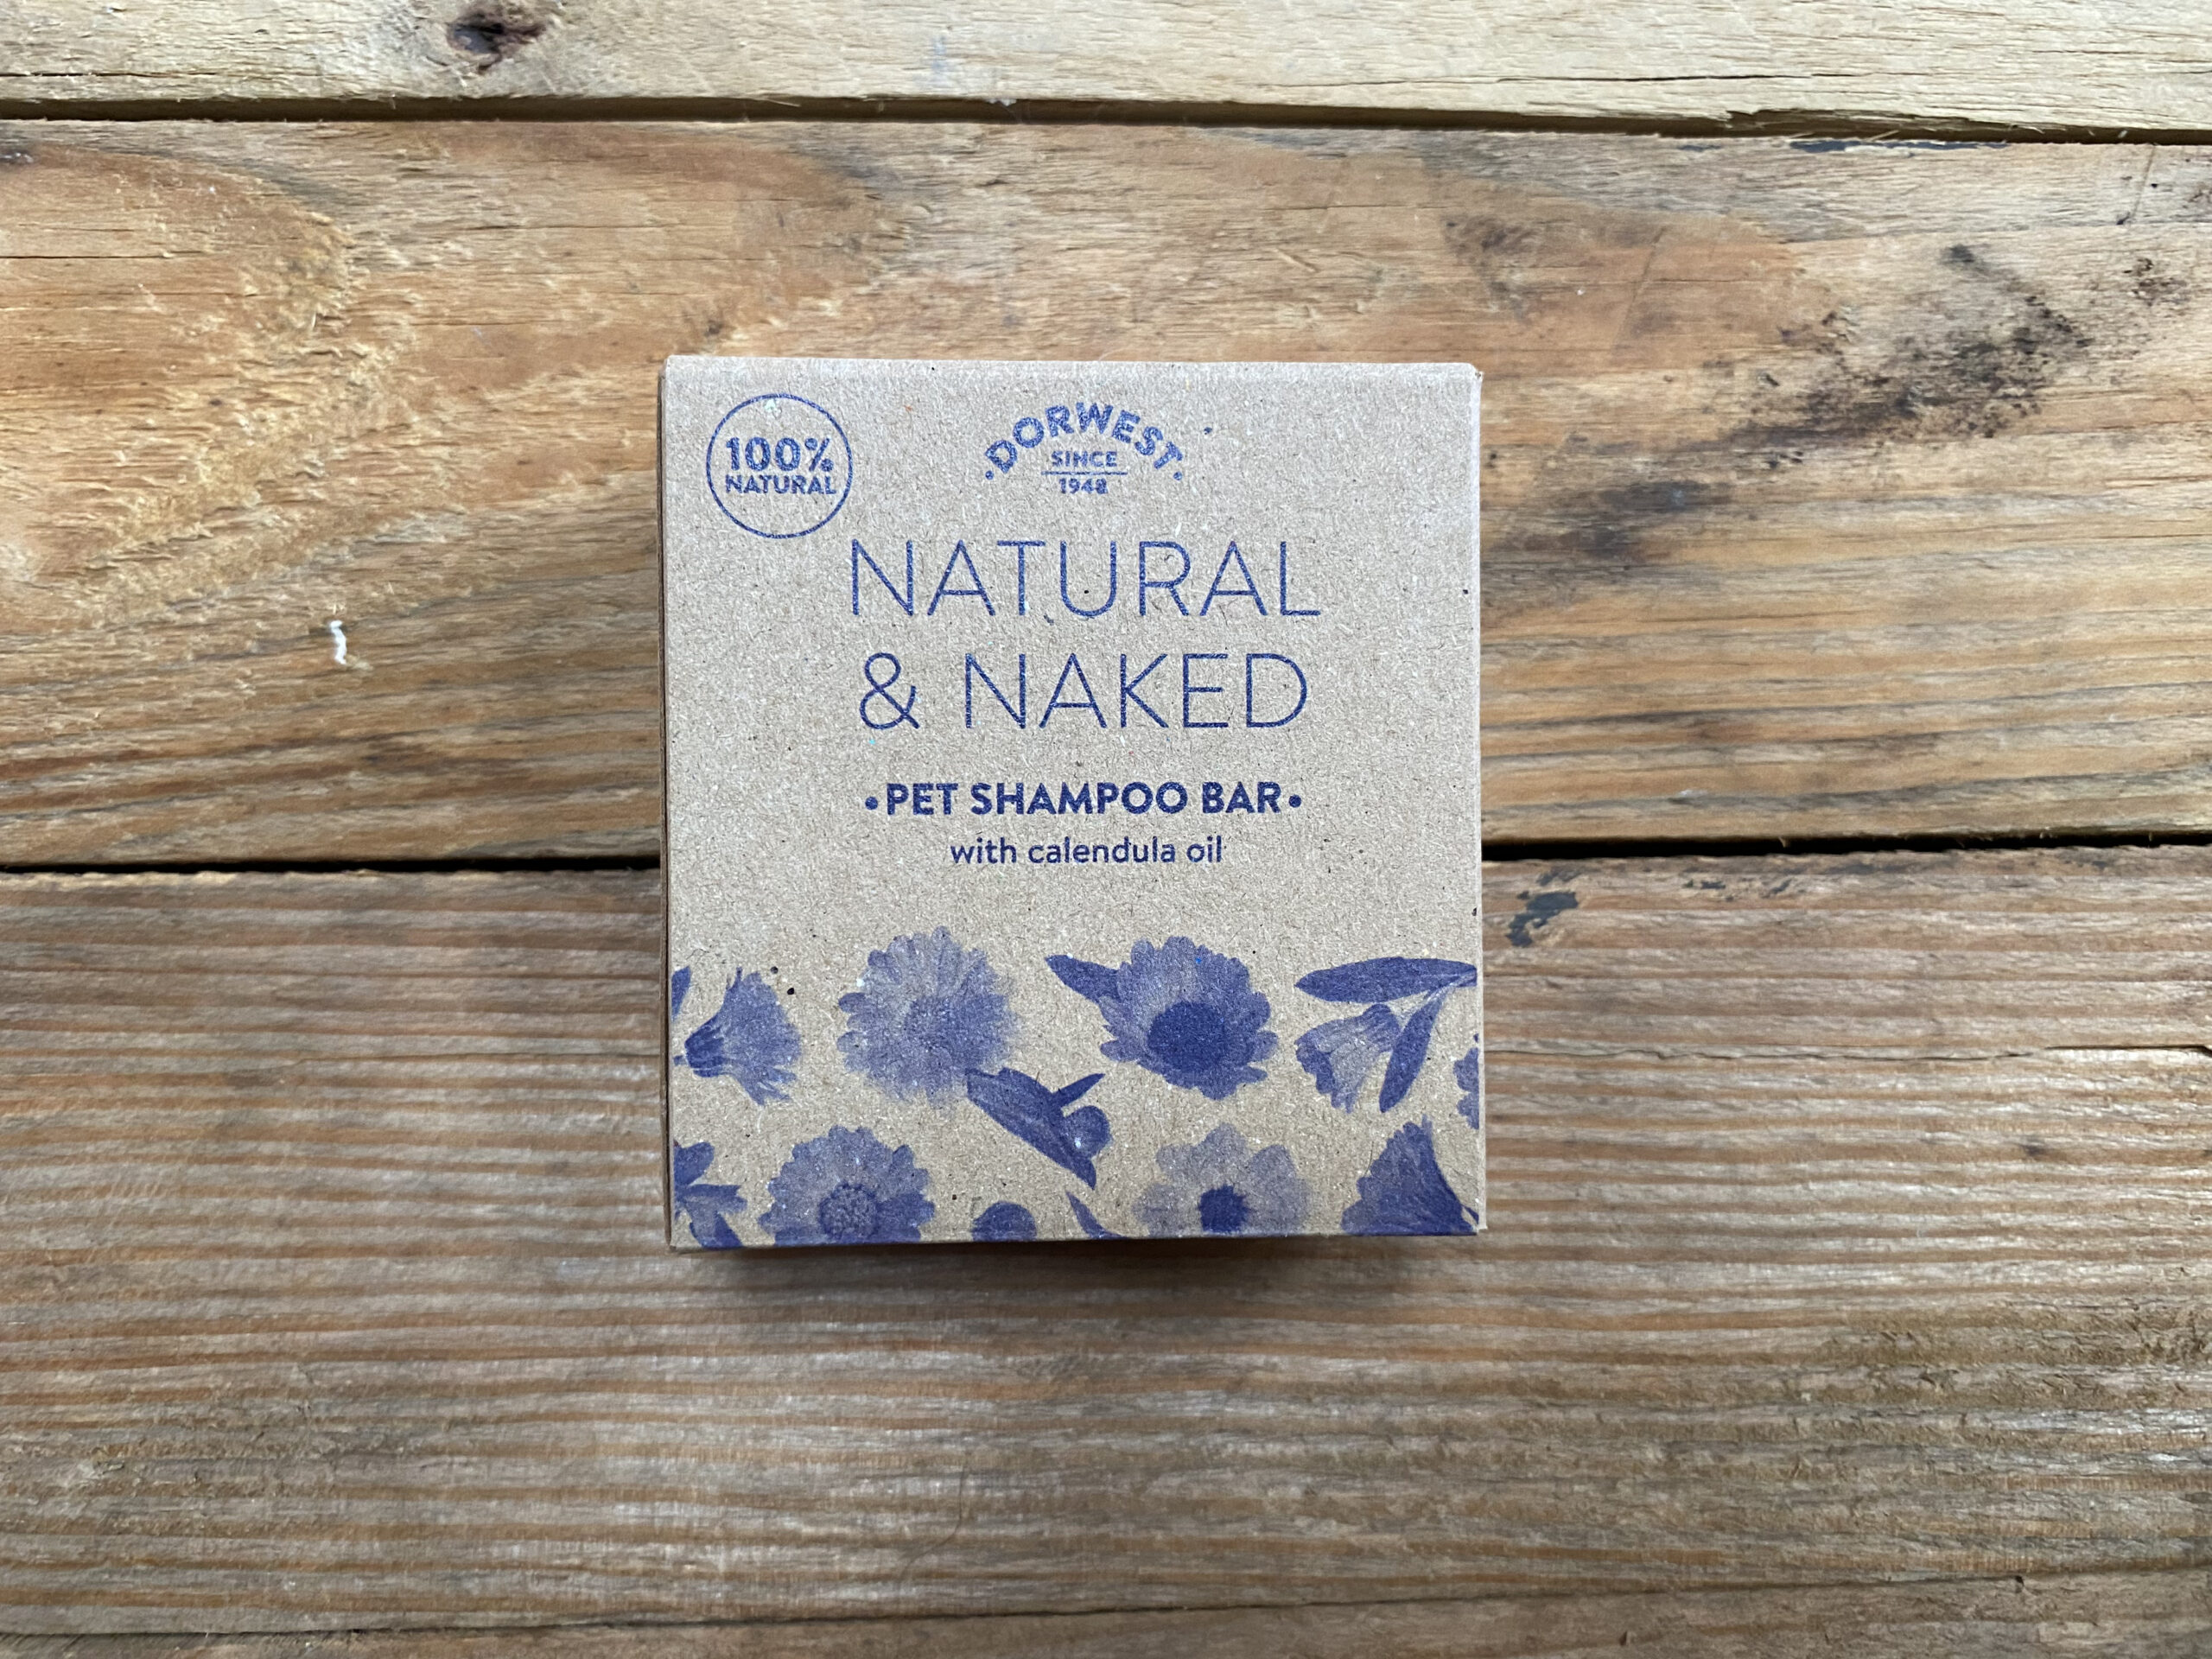 Dorwest Natural & Naked Shampoo Bar